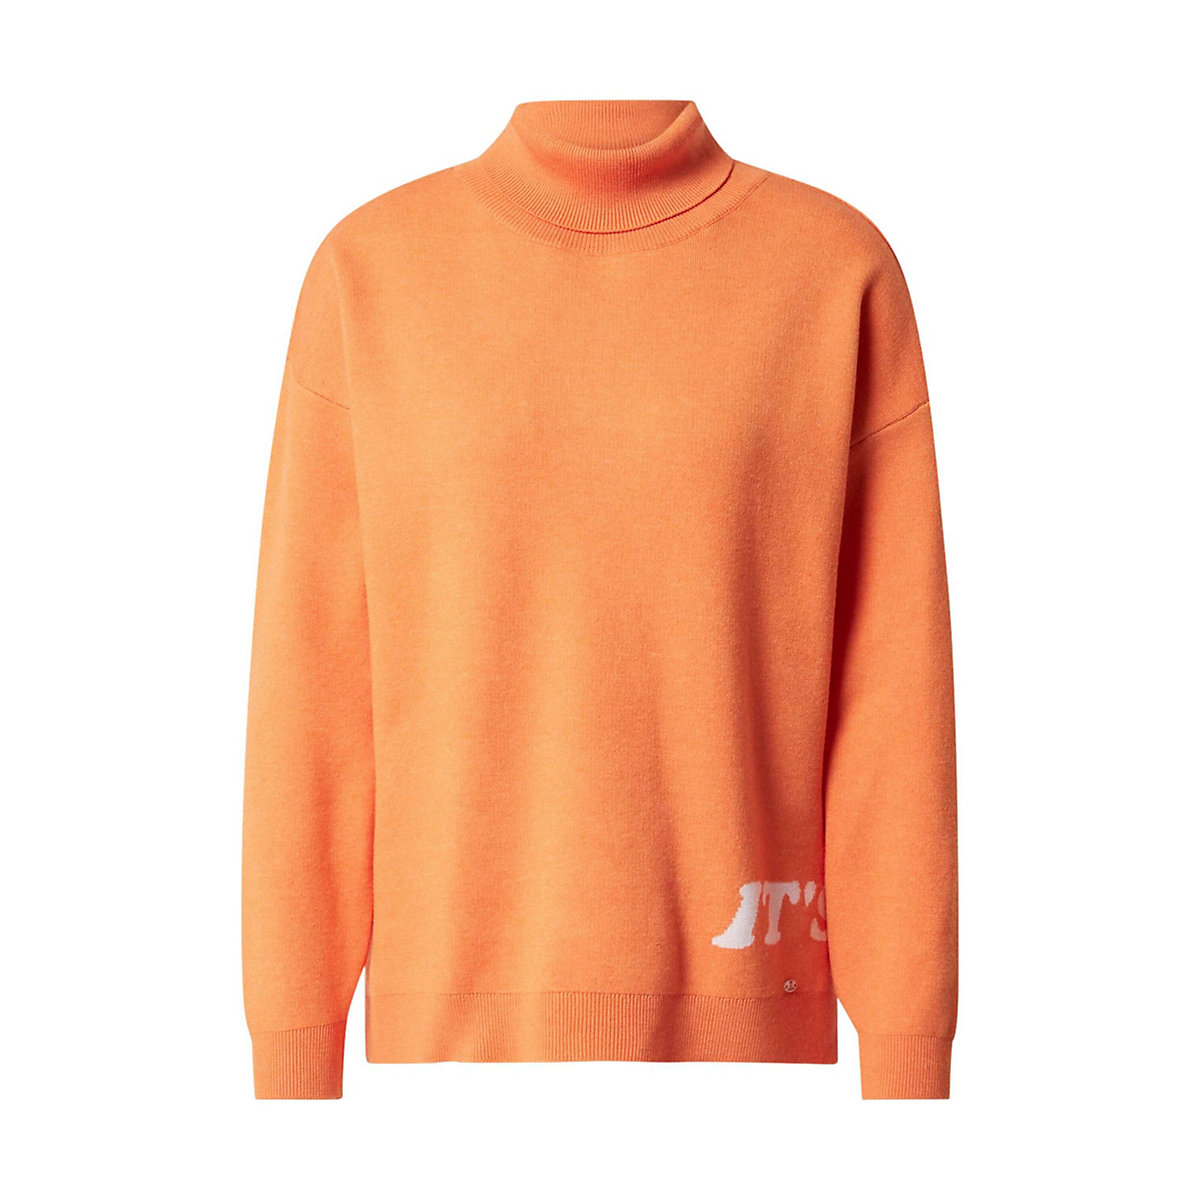 KEY LARGO Pullover Dream orange/weiß